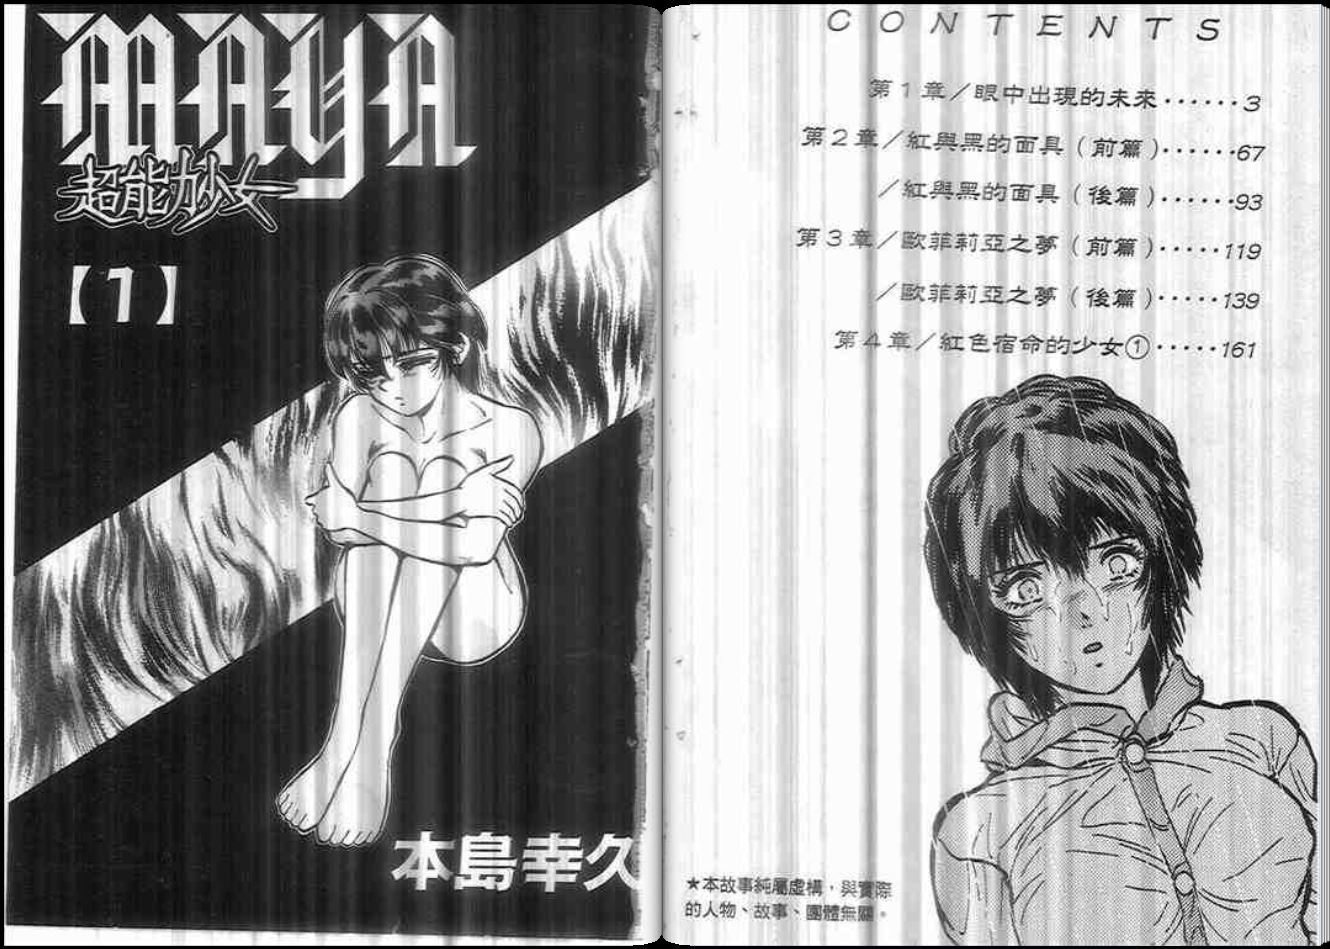 超能力少女maya 第01卷 漫畫線上看 動漫戲說 Acgn Cc